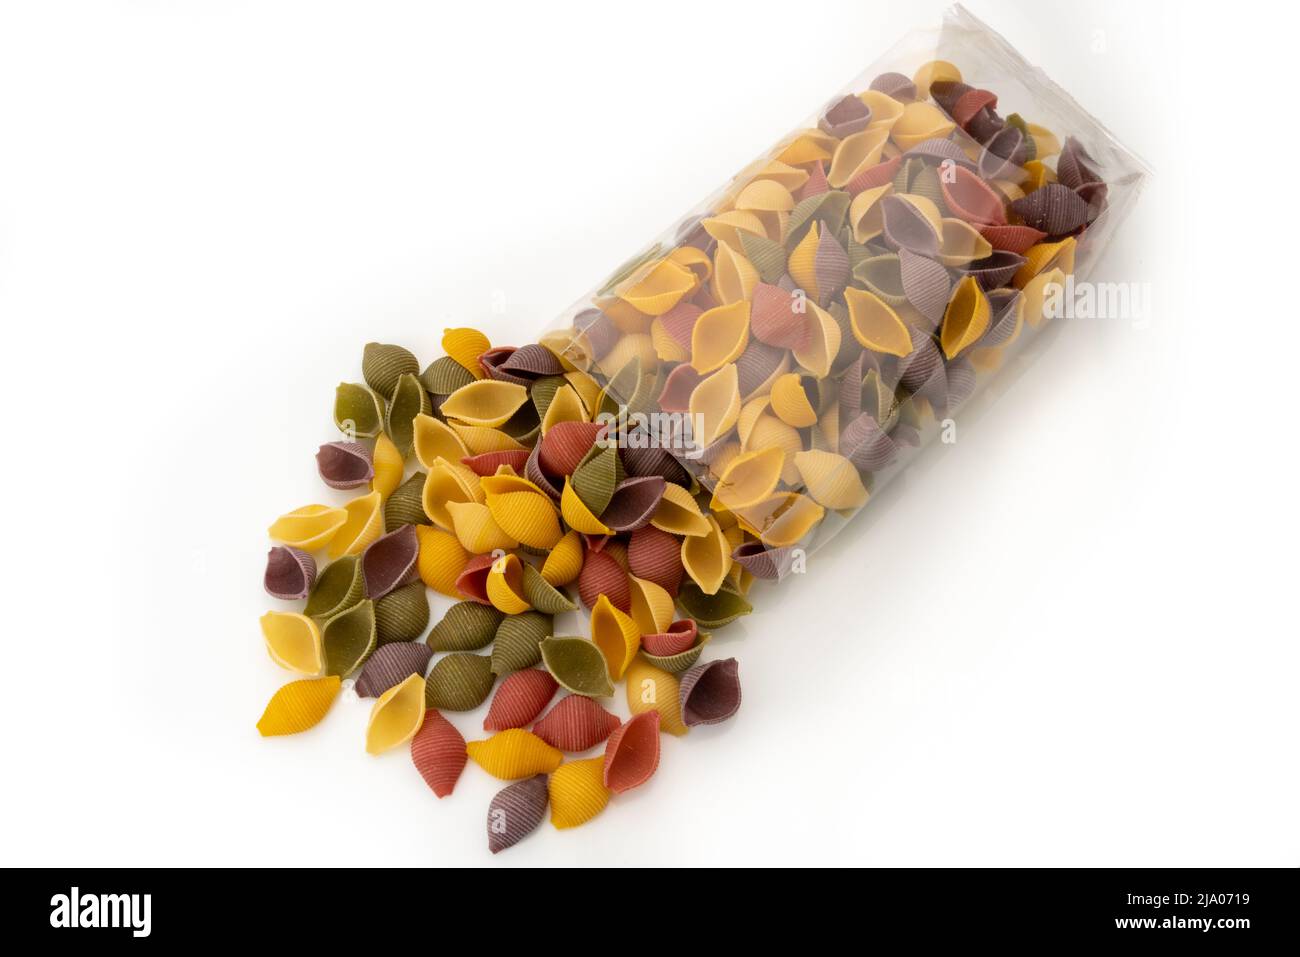 Conchiglie di pasta colorata che fuoriescono da sacchetto trasparente, semola di grano duro con curcuma, spinaci, barbabietole e carro nero Foto Stock